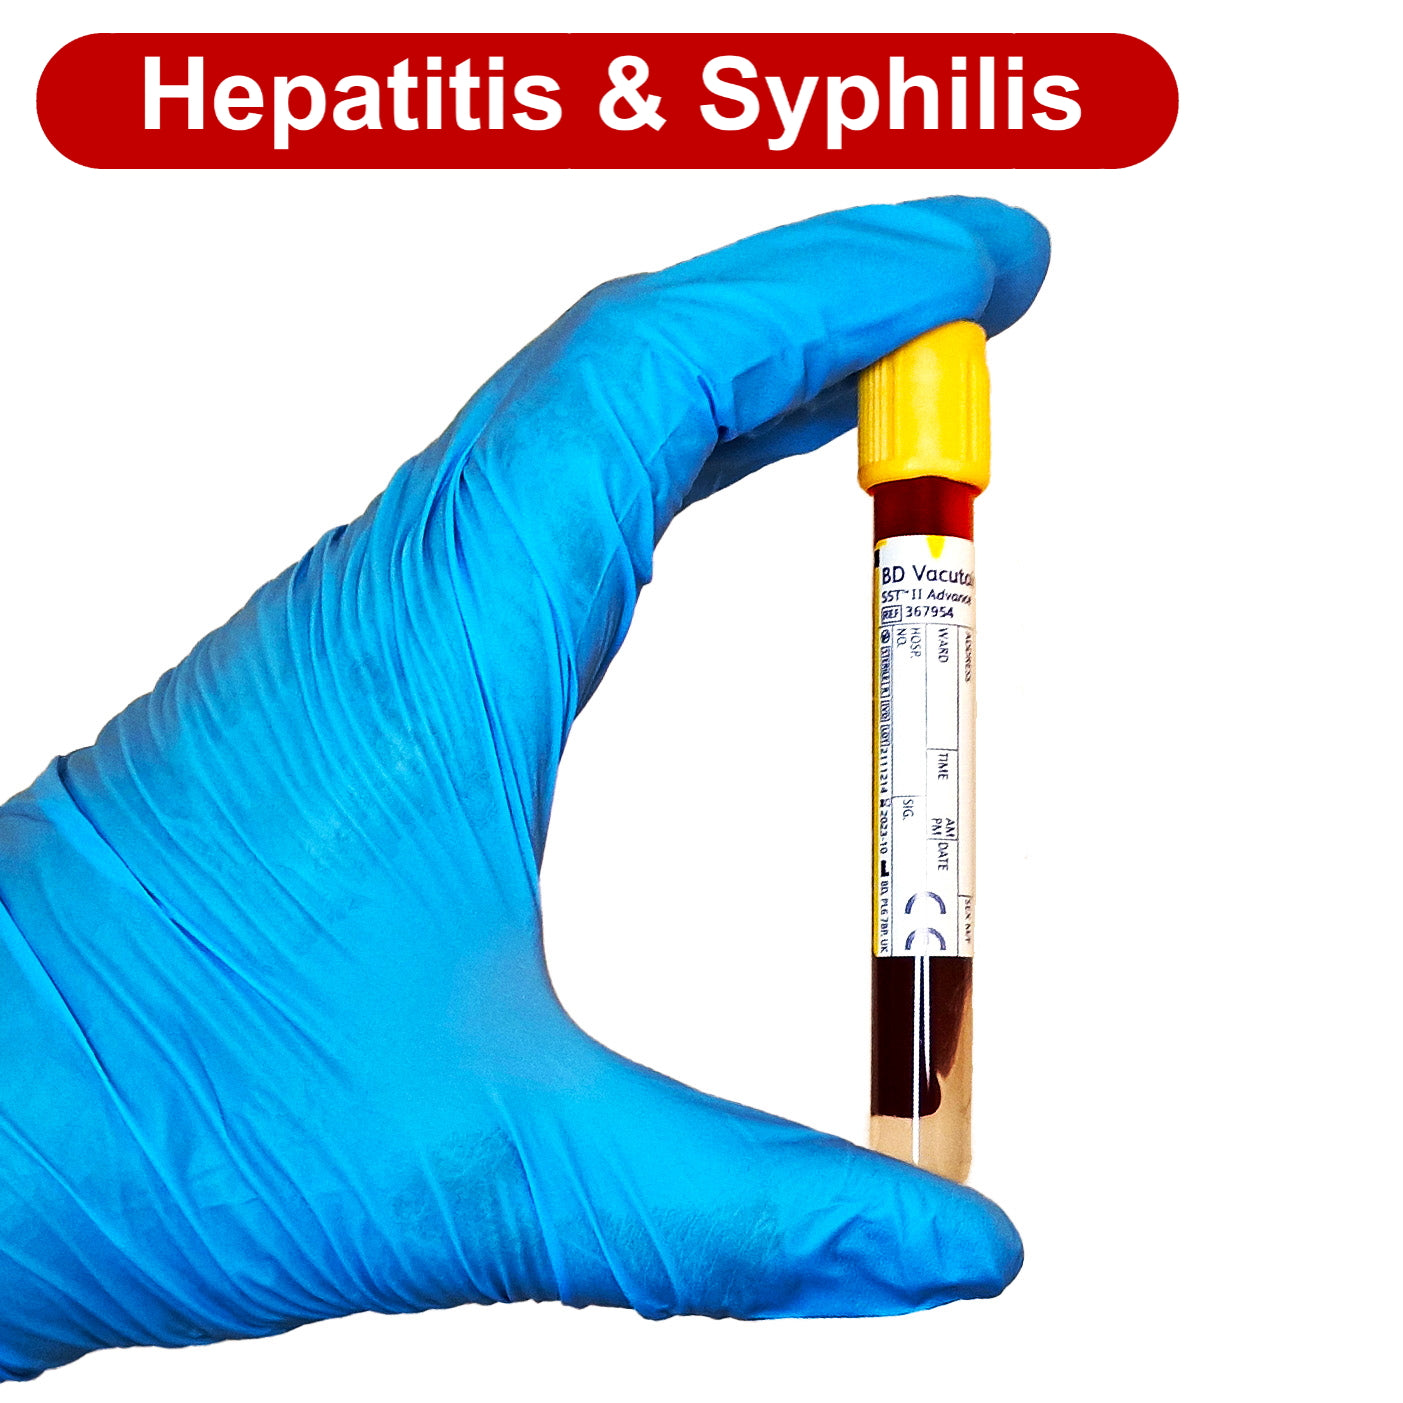 Hepatitis & Syphilis Blood Test